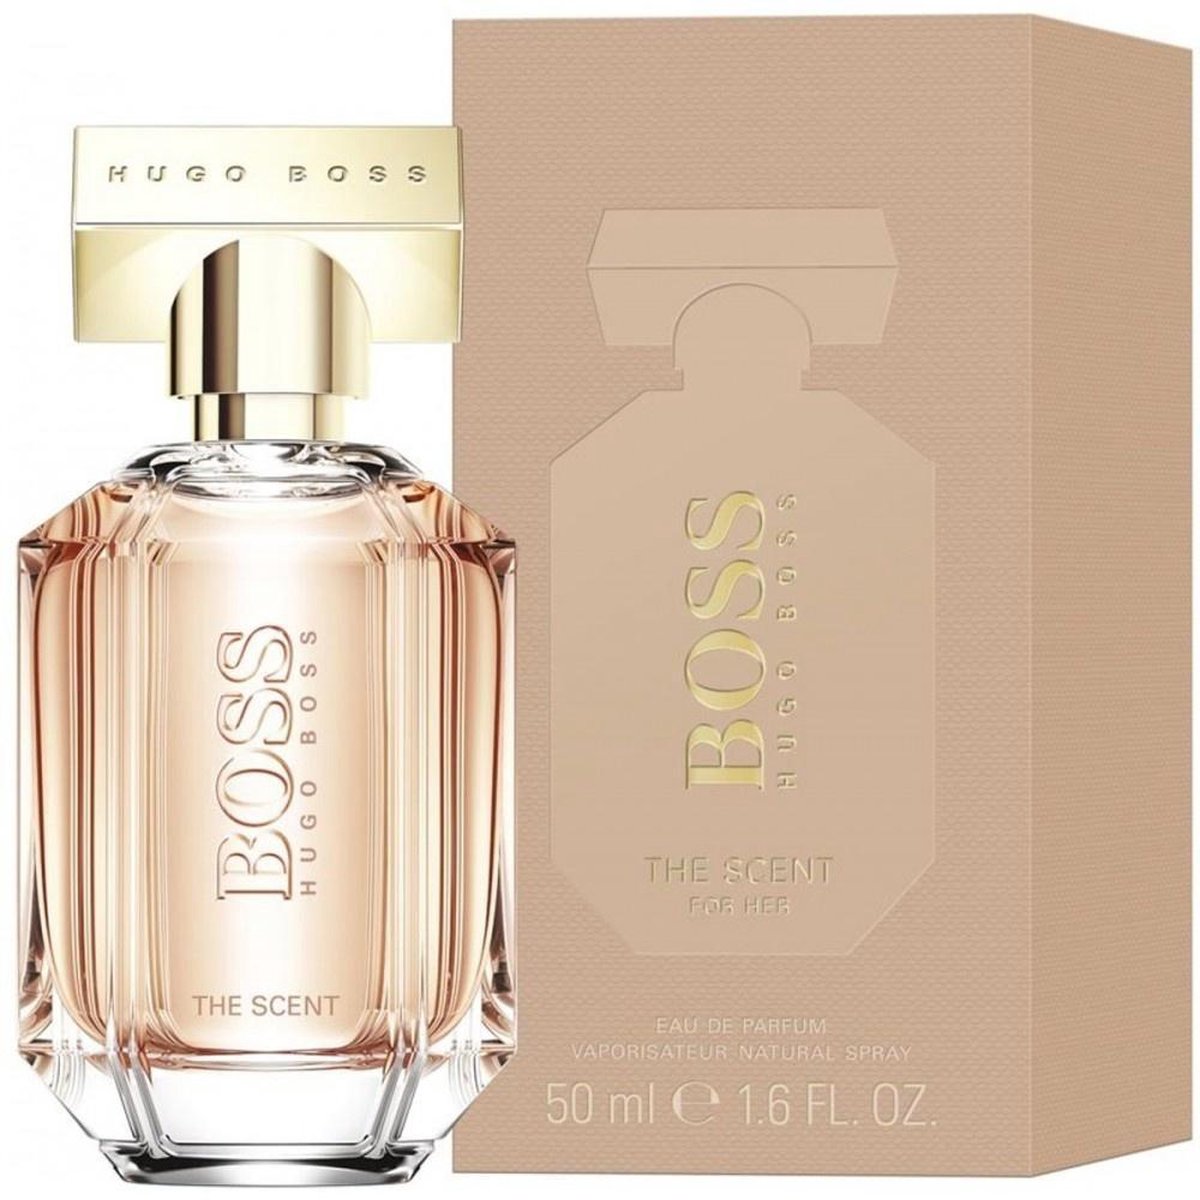 ergens bij betrokken zijn smokkel Edele Hugo Boss The Scent 50 ml - Eau de Parfum - Damesparfum | bol.com